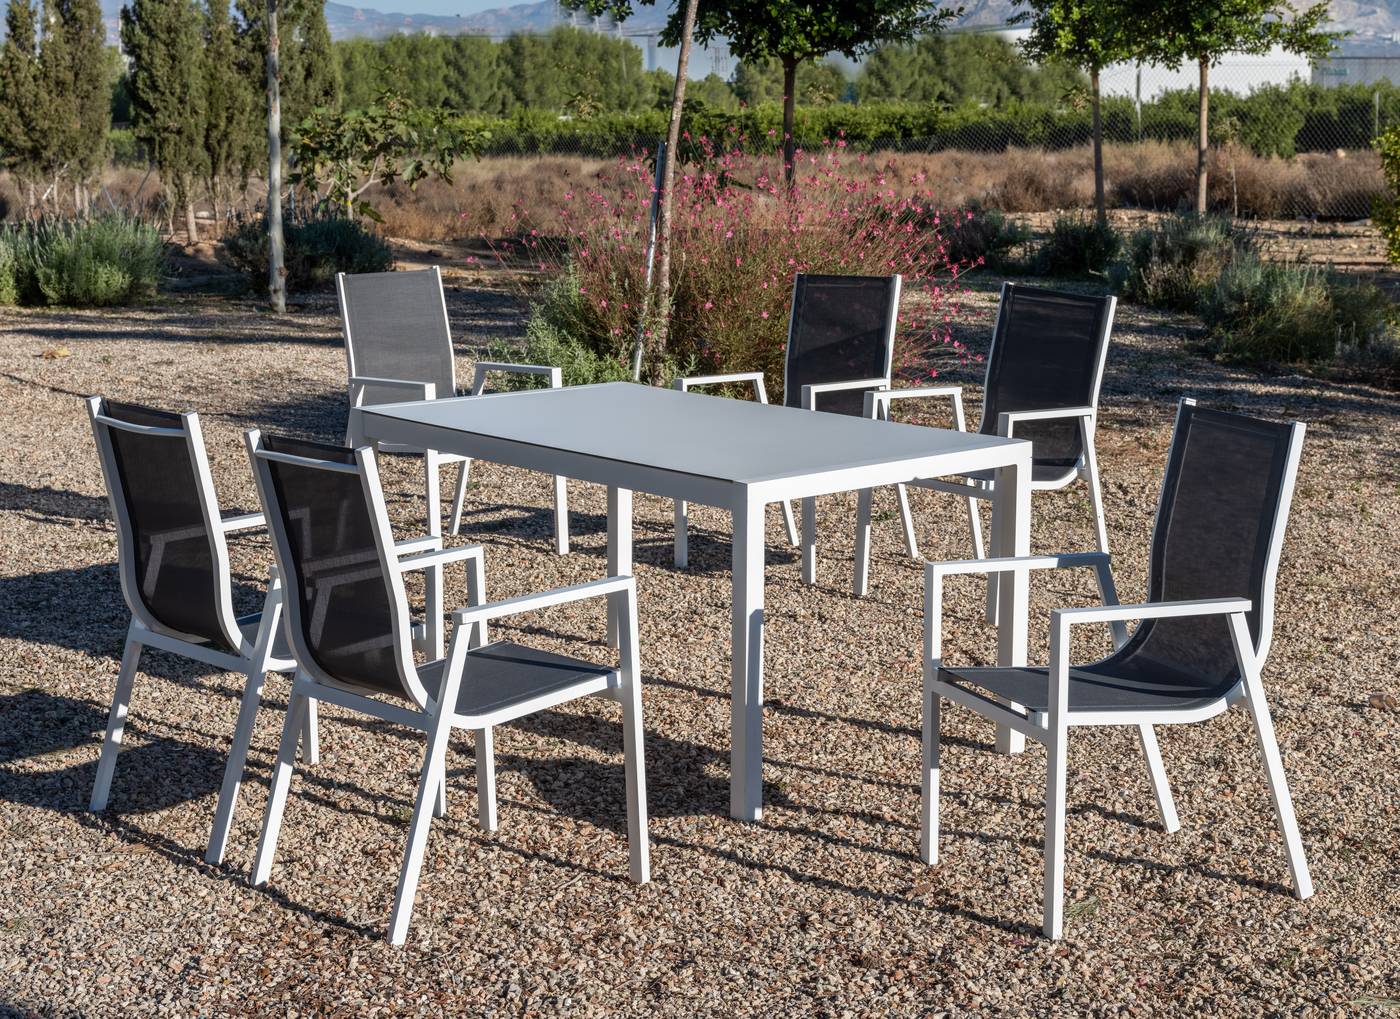 Sillón Aluminio Sidney - Sillón apilable de aluminio color blanco o antracita, con asiento y respaldo integrado de textilen